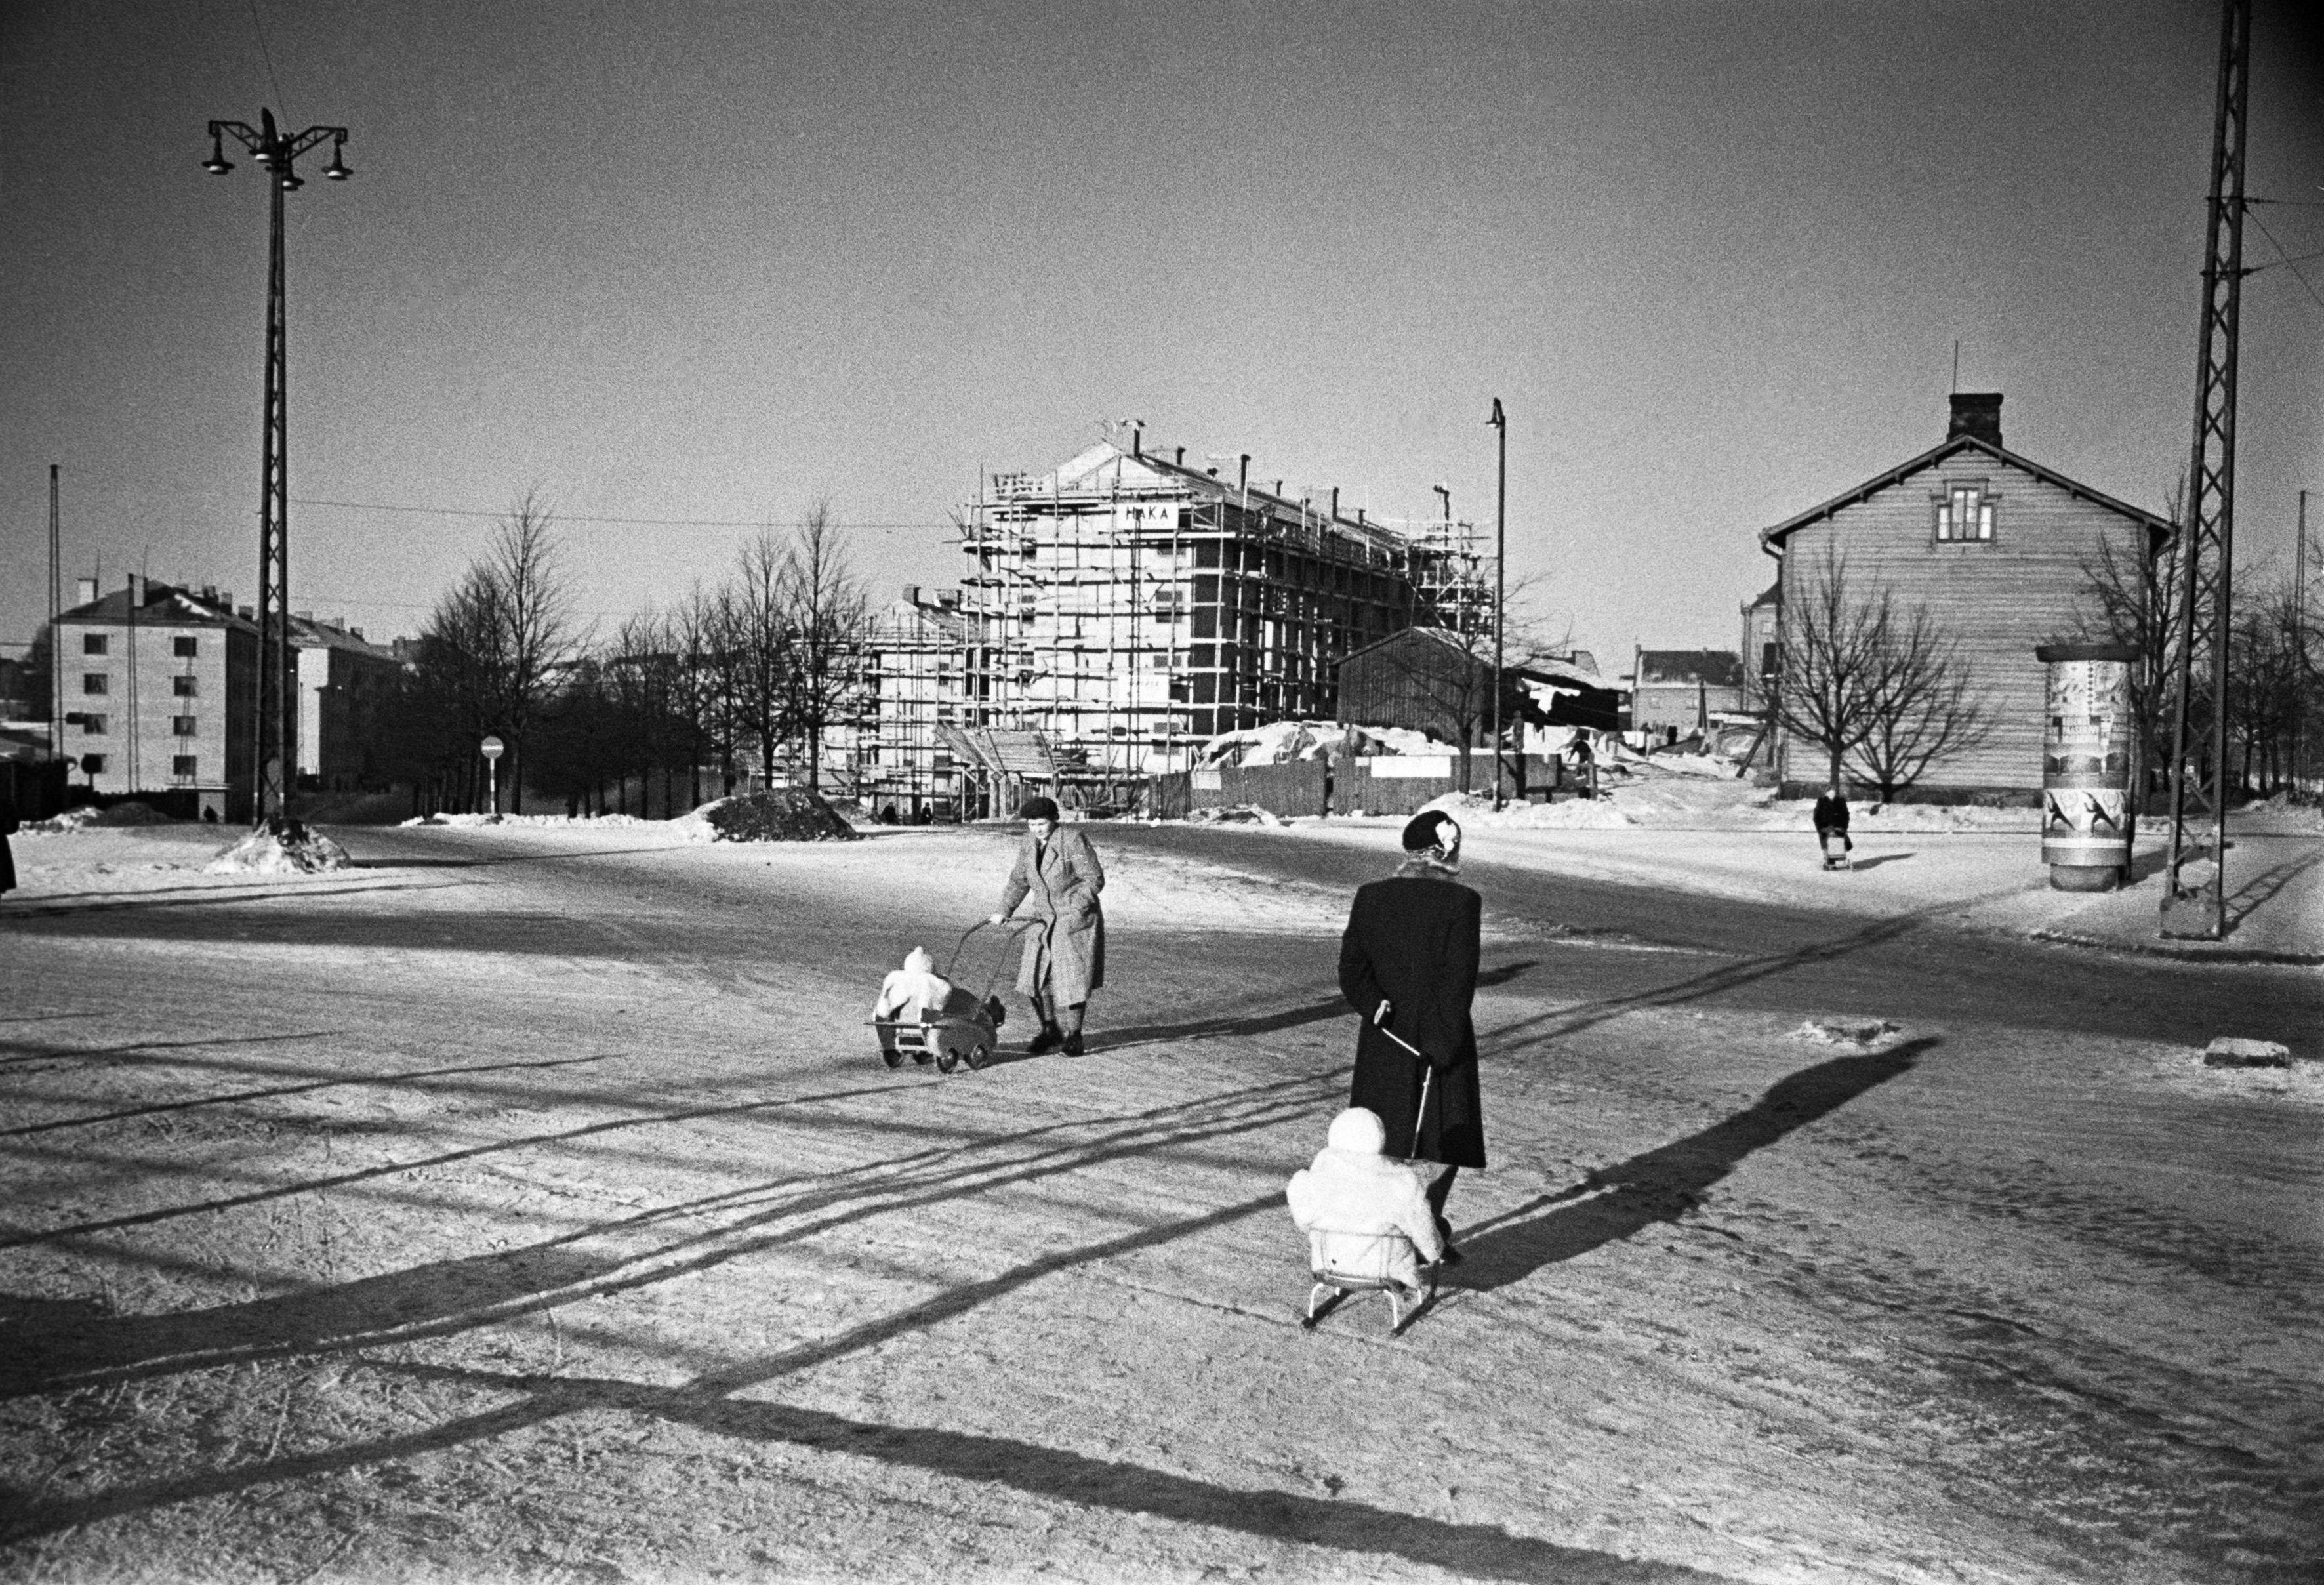 Näkymä Hämeentieltä Mäkelänkadulle. Oikealla. Mäkelänkatu 1 ja sen takana Mäkelänkatu 3 ja 5 rakenteilla. Vasemmalla Mäkelänkatu 4. Mäkelänkatu 3 ja 5 valmistuivat 1951.